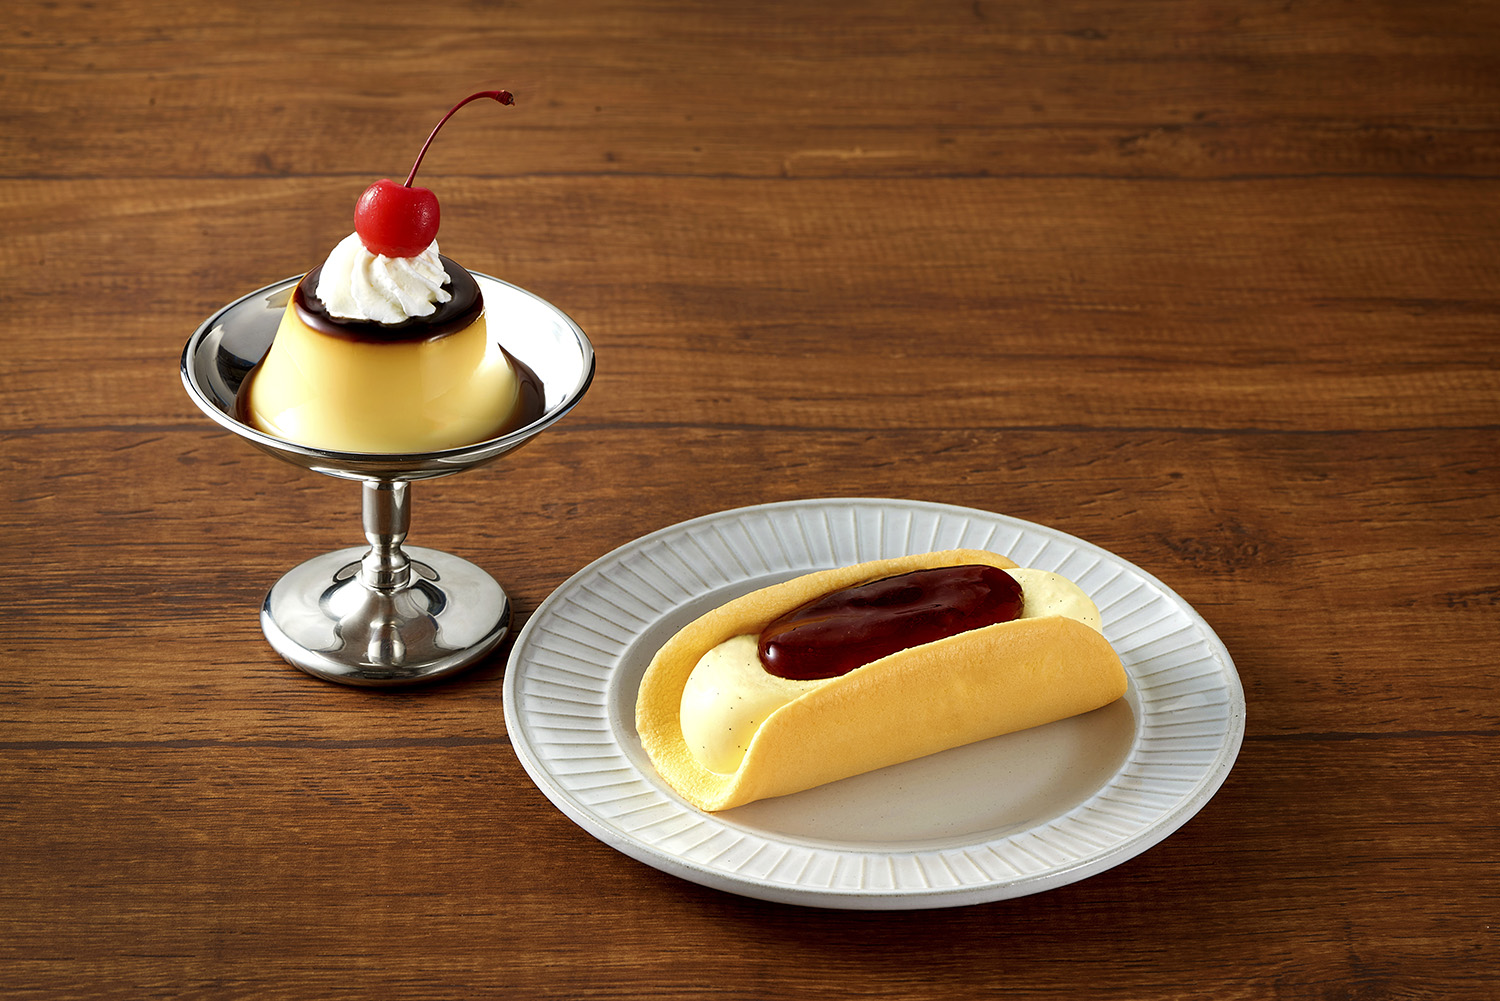 レトロ喫茶店の プリン とふわふわケーキを一体化 Kasanel プリンケーキアイス 新発売 Emo Miu エモミュー